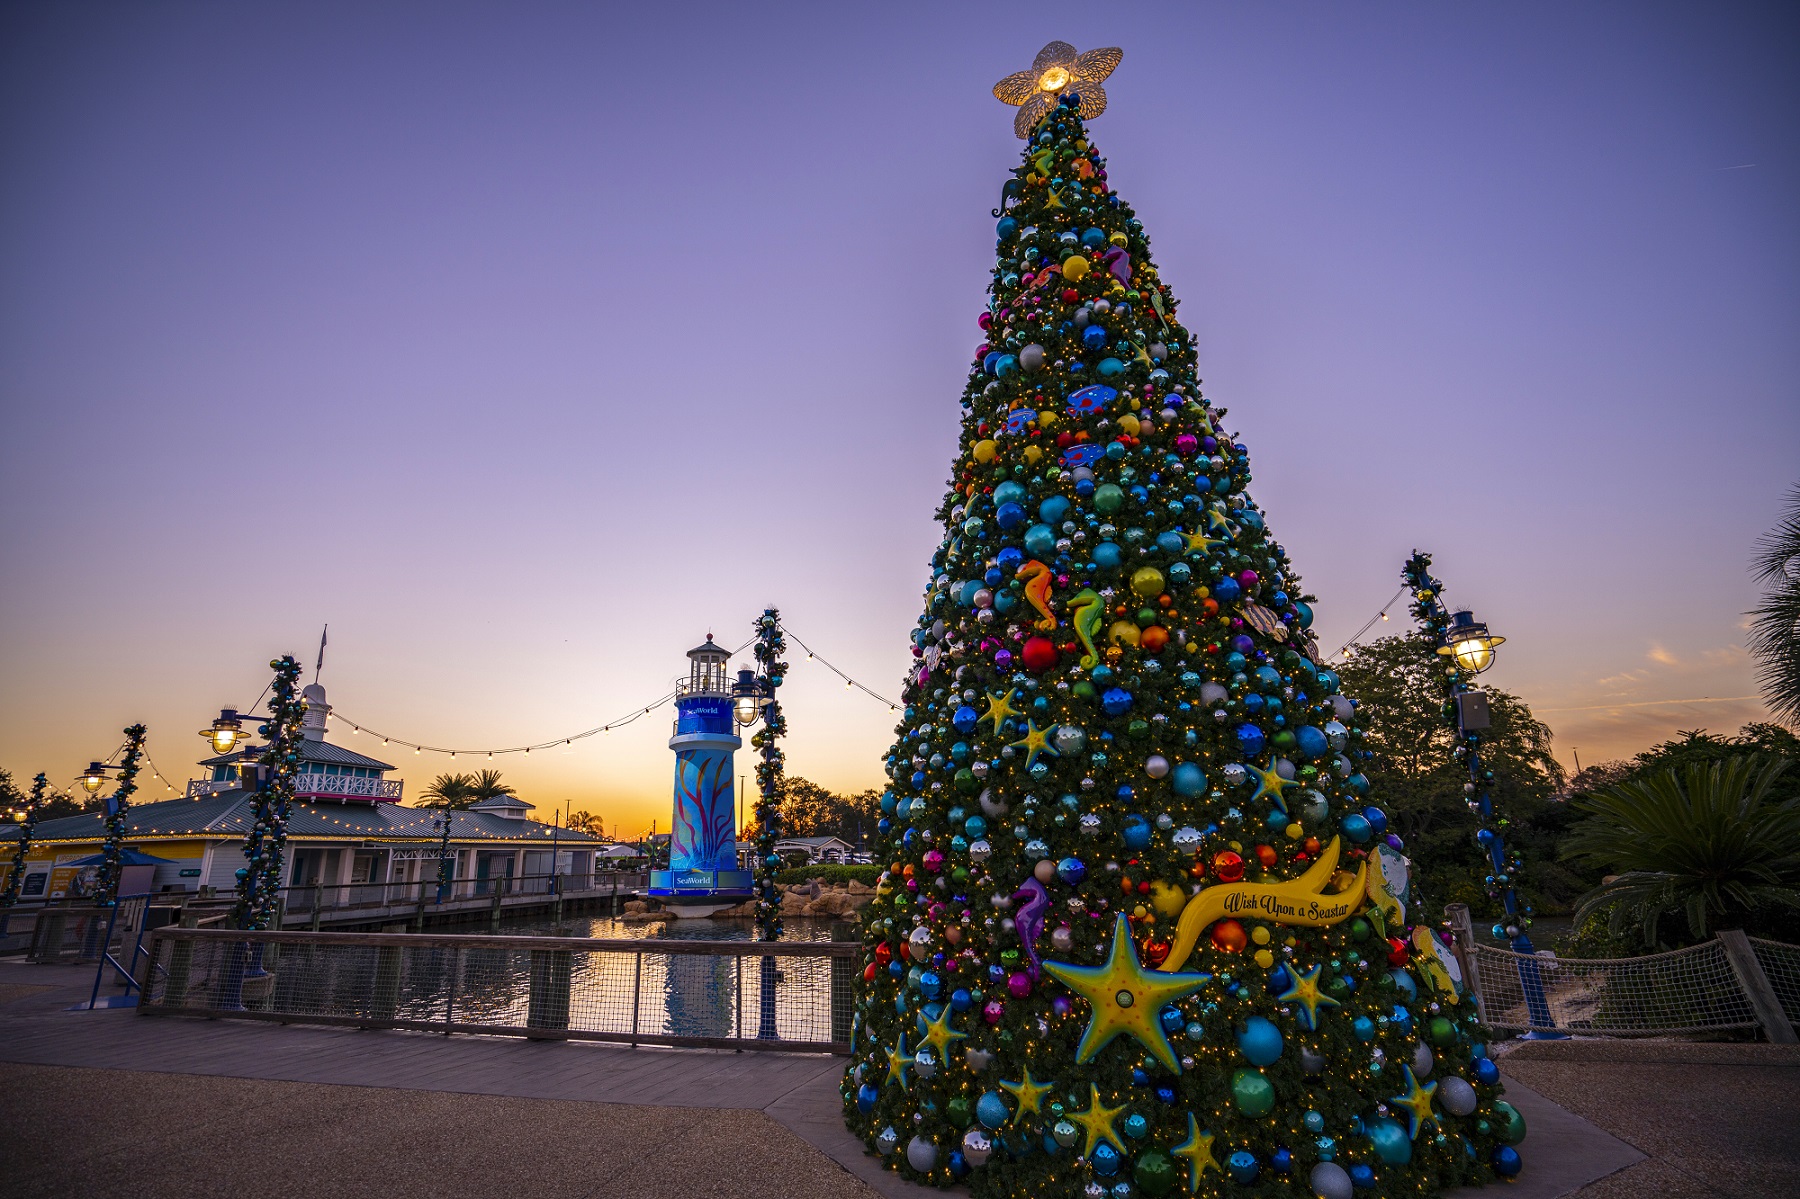 SeaWorld Orlando’s Christmas Celebration begins November 12 Inside